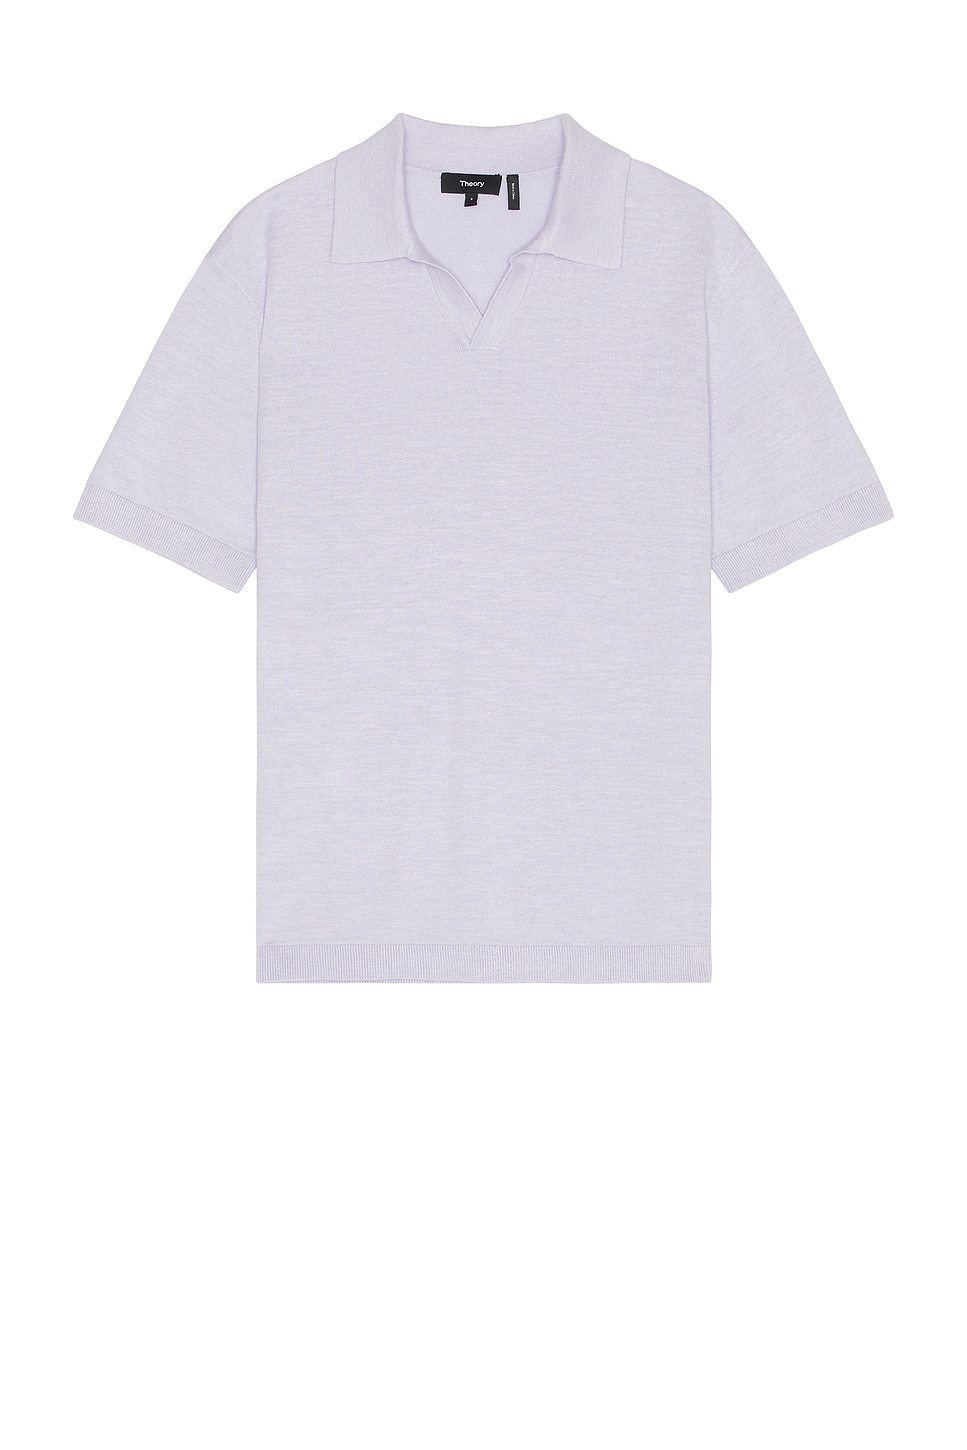 Brenan Short Sleeve Polo in Lavender